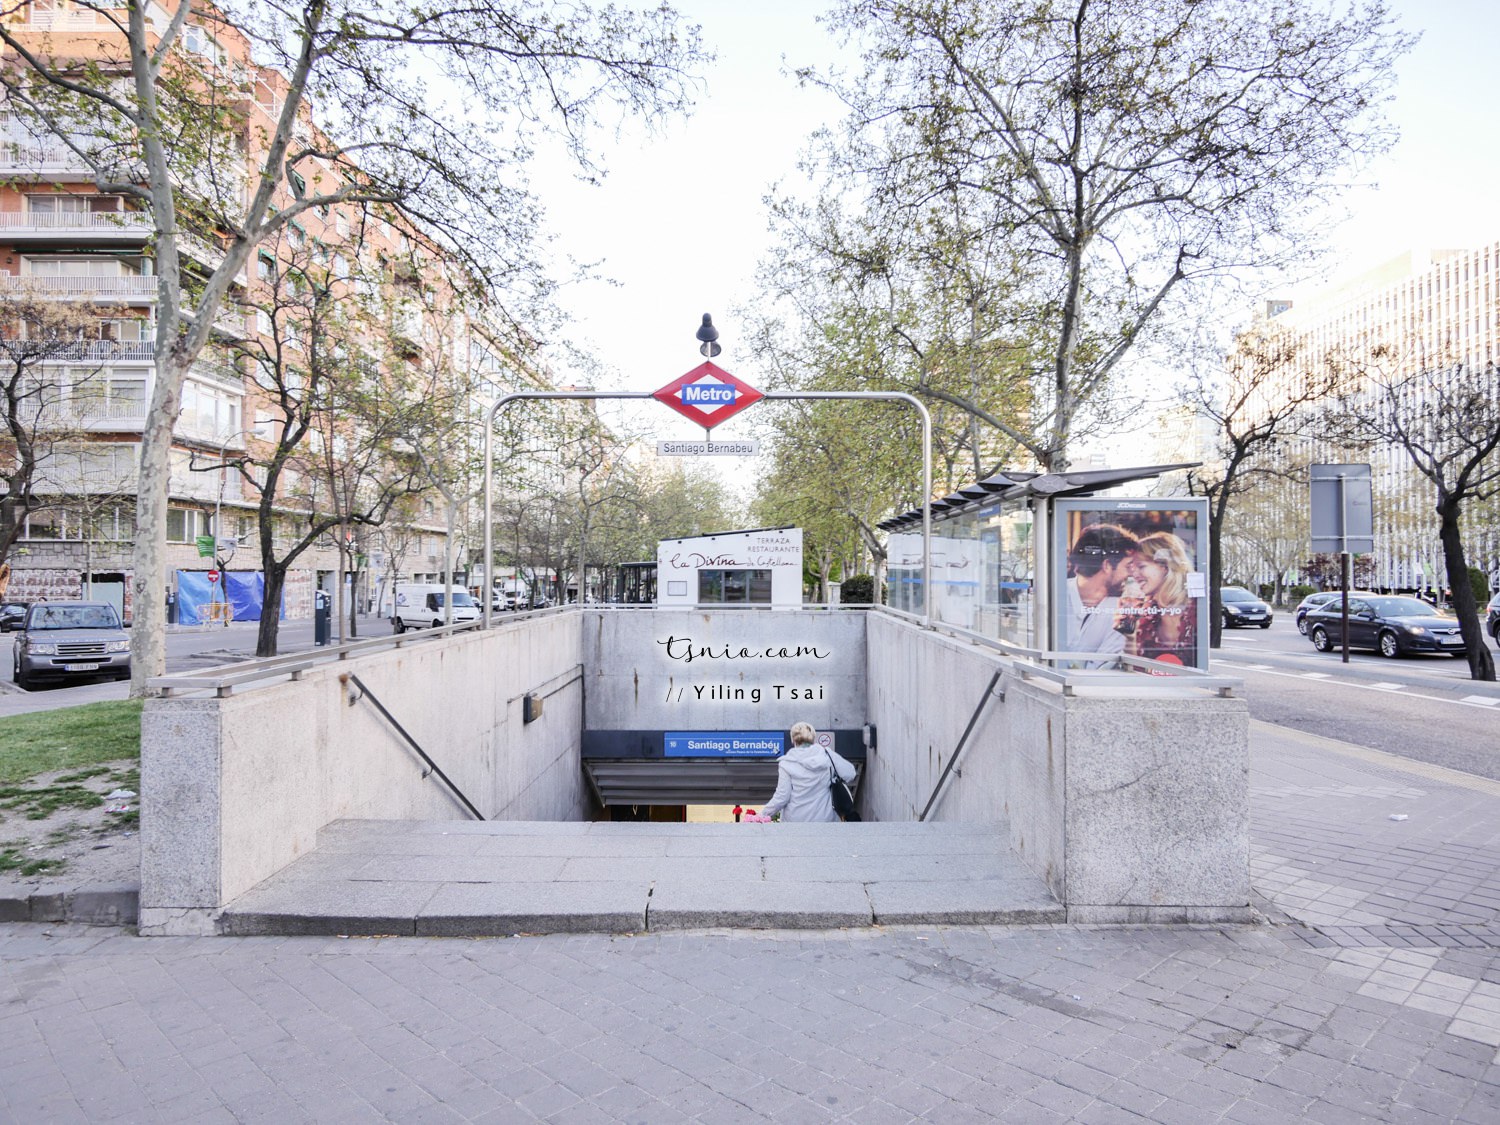 西班牙馬德里市區交通方式介紹 地鐵、公車、腳踏車、觀光巴士